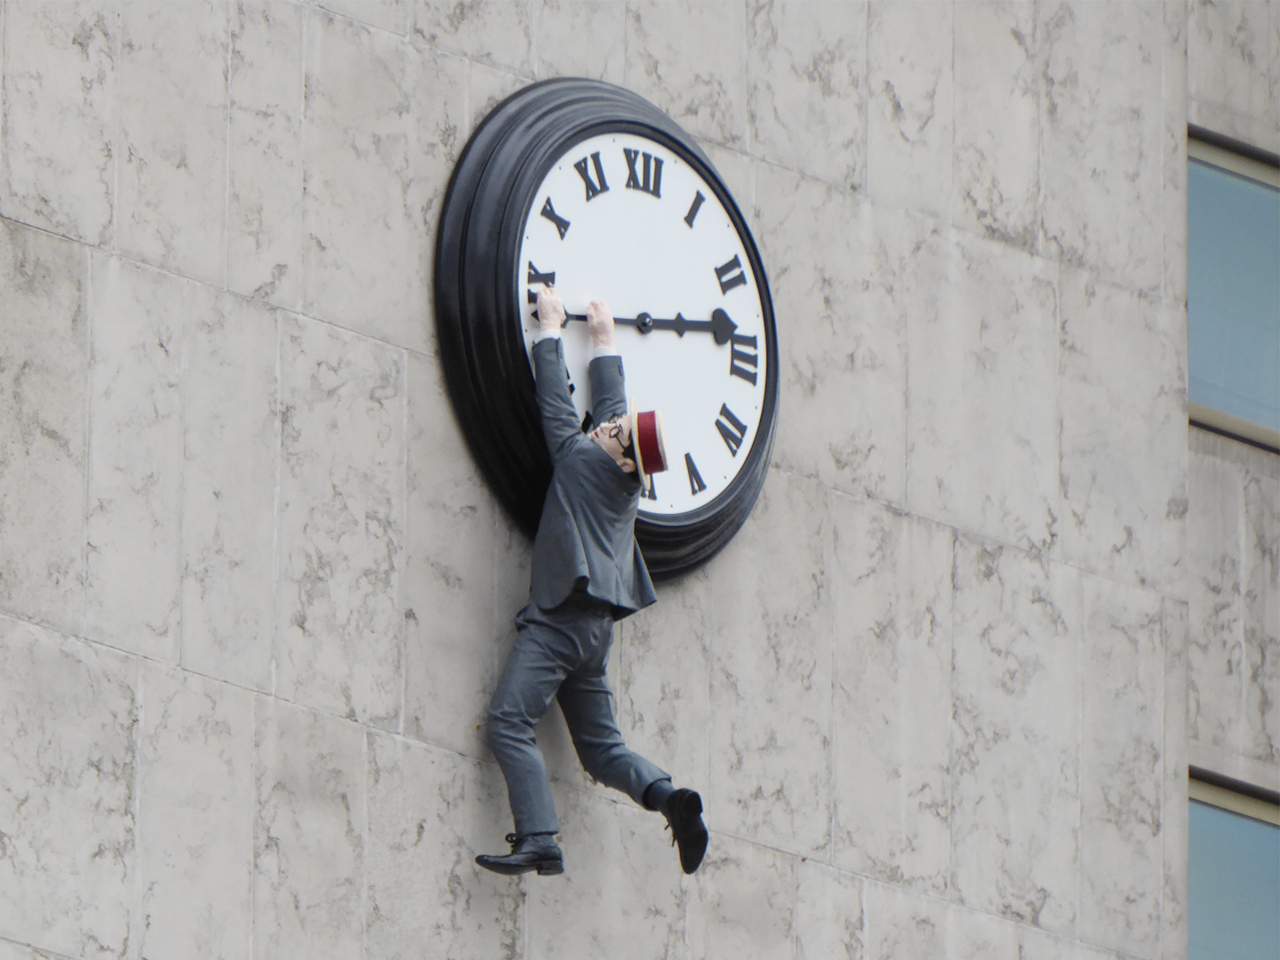 Reproduction d'Harold Lloyd suspendu à l'horloge dans le film Monte là-dessus !située sur une face de l'hôtel InterContinental de Vienne en novembre 2016.